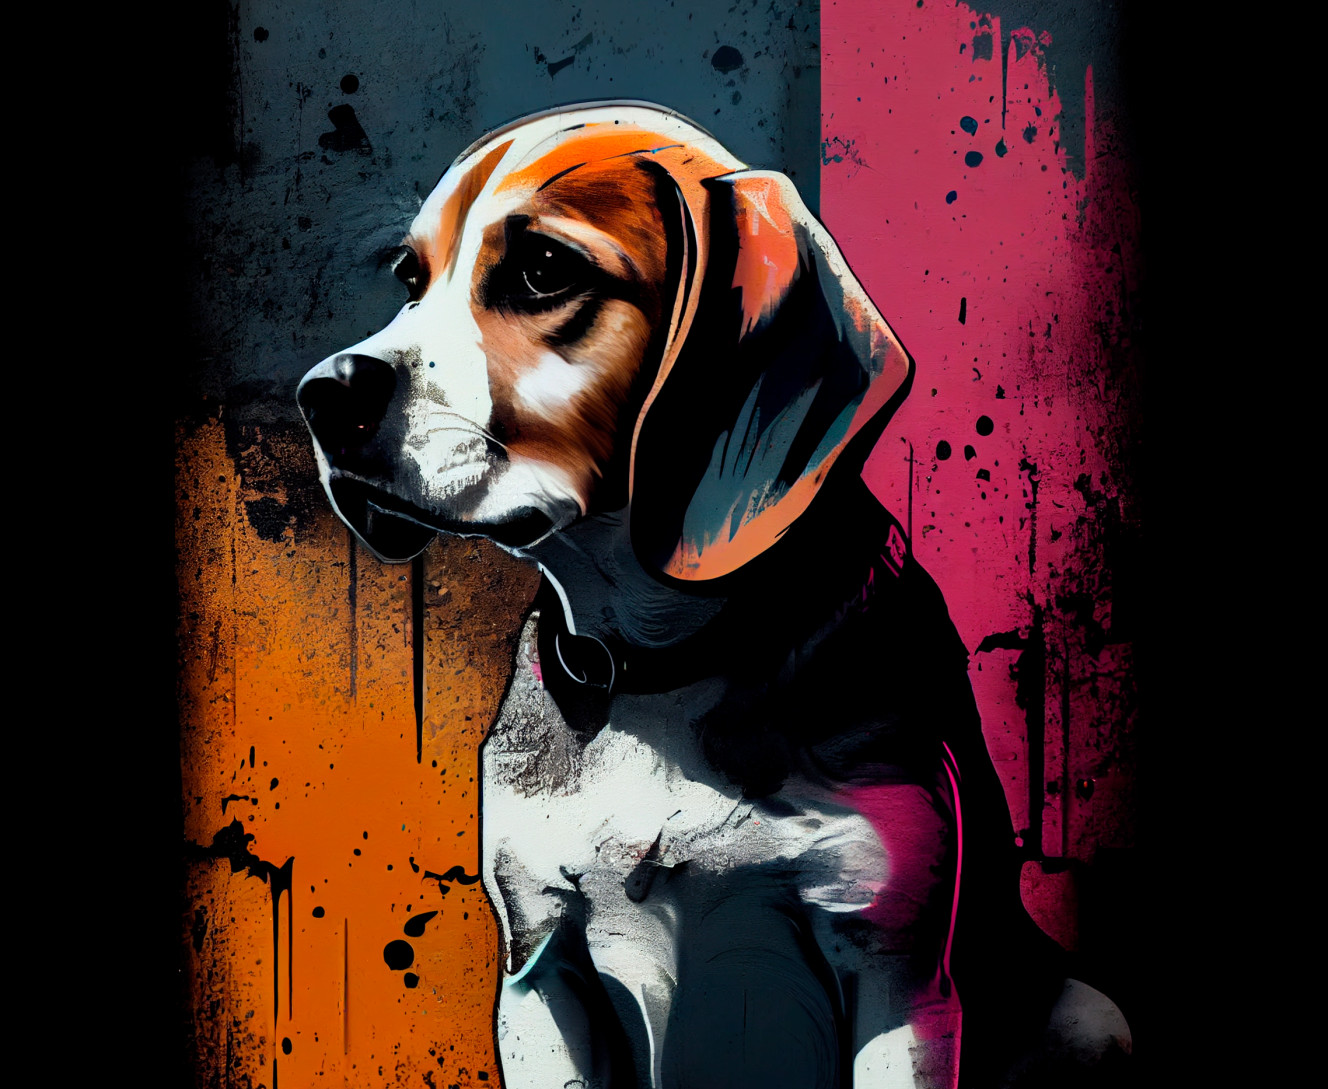 Beagle 2